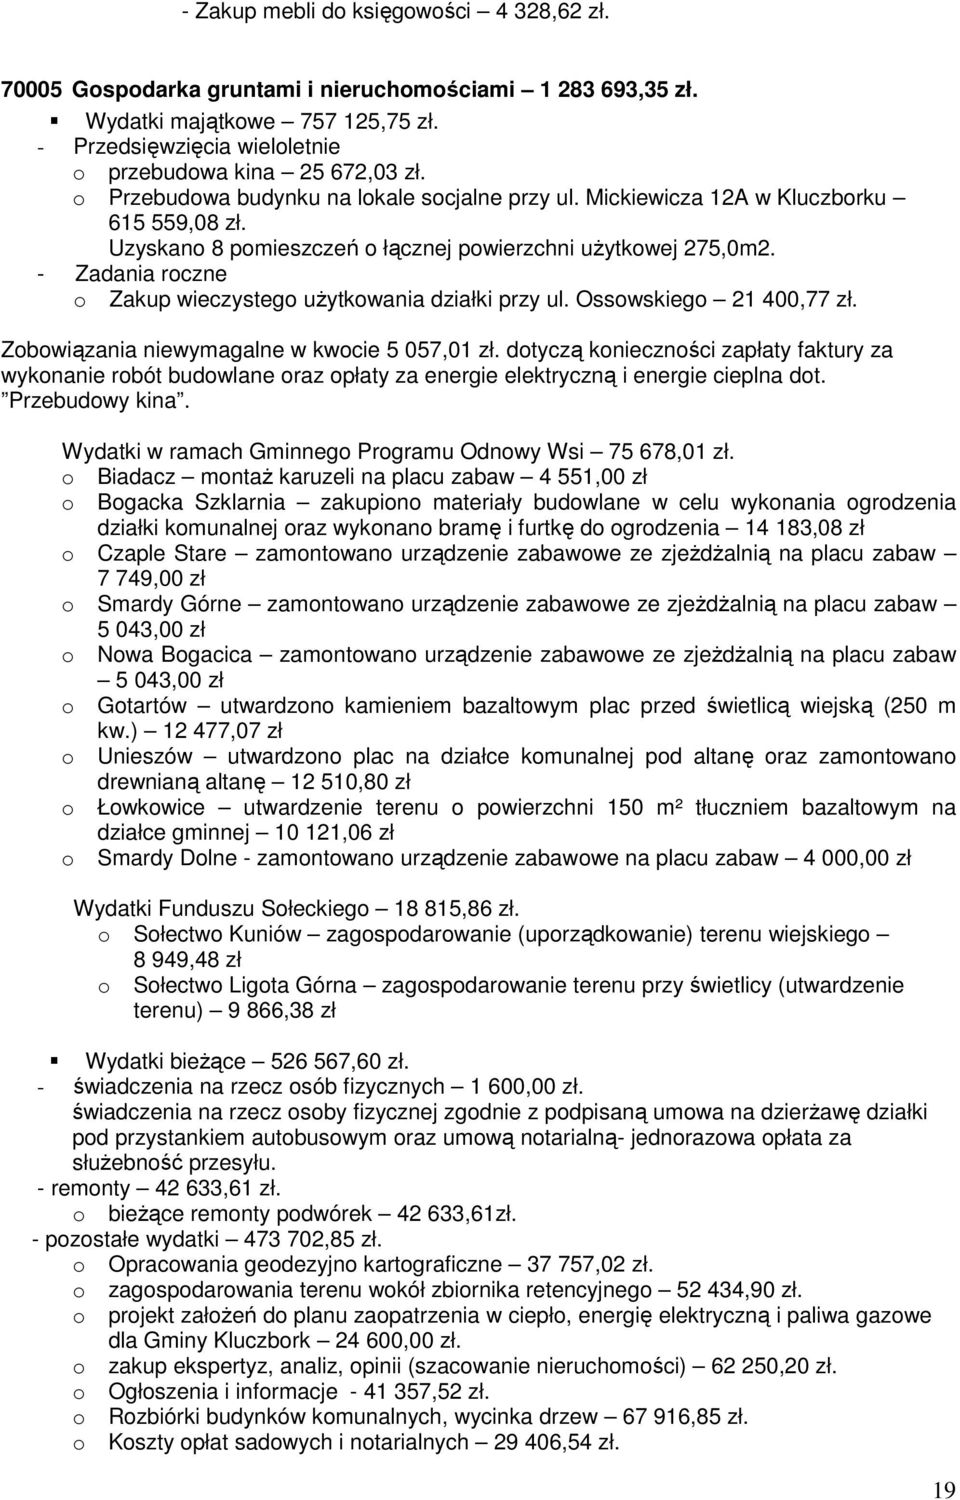 - Zadania roczne o Zakup wieczystego uŝytkowania działki przy ul. Ossowskiego 21 400,77 zł. Zobowiązania niewymagalne w kwocie 5 057,01 zł.